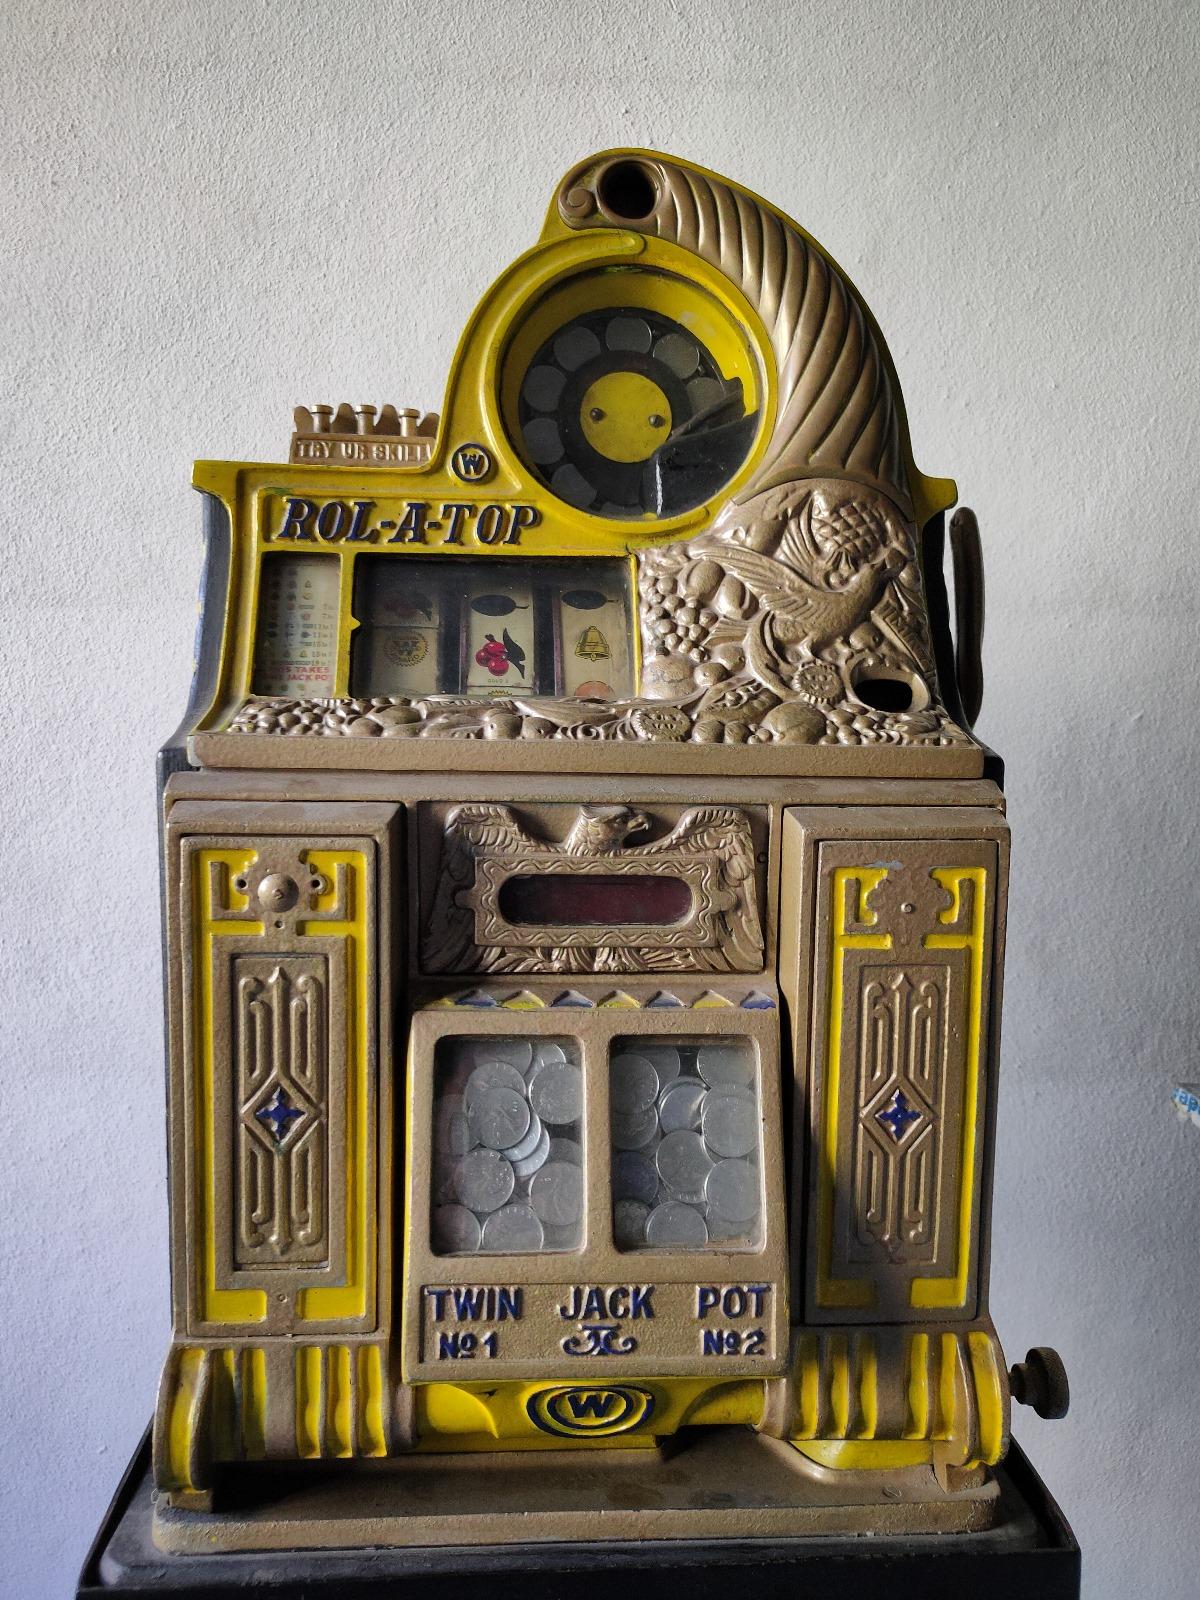 Watling Rol A Top 25 cent slot machine circa 1930's. La machine présente les caractéristiques uniques suivantes : - arrêts de compétence - jeton Golden AWARD - vendeurs de monnaie - machine Bird of Paradise souhaitable - machine à pièces de 25 cents